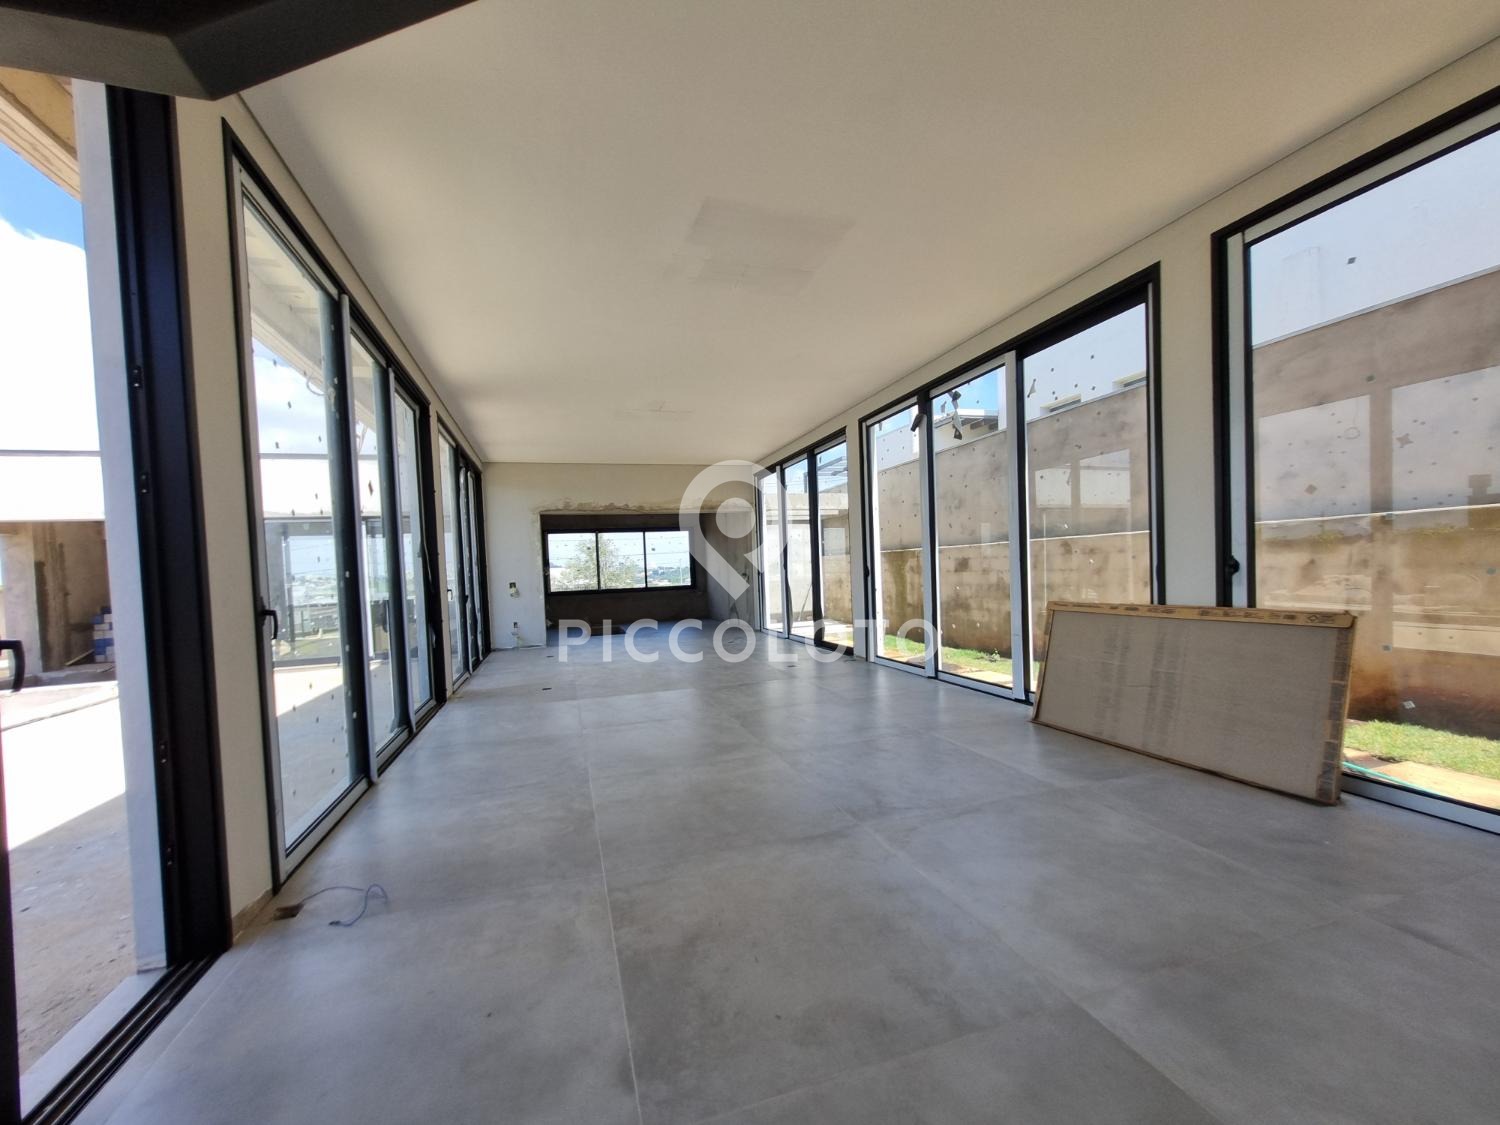 Piccoloto -Casa à venda no Loteamento Mont Blanc Residence em Campinas